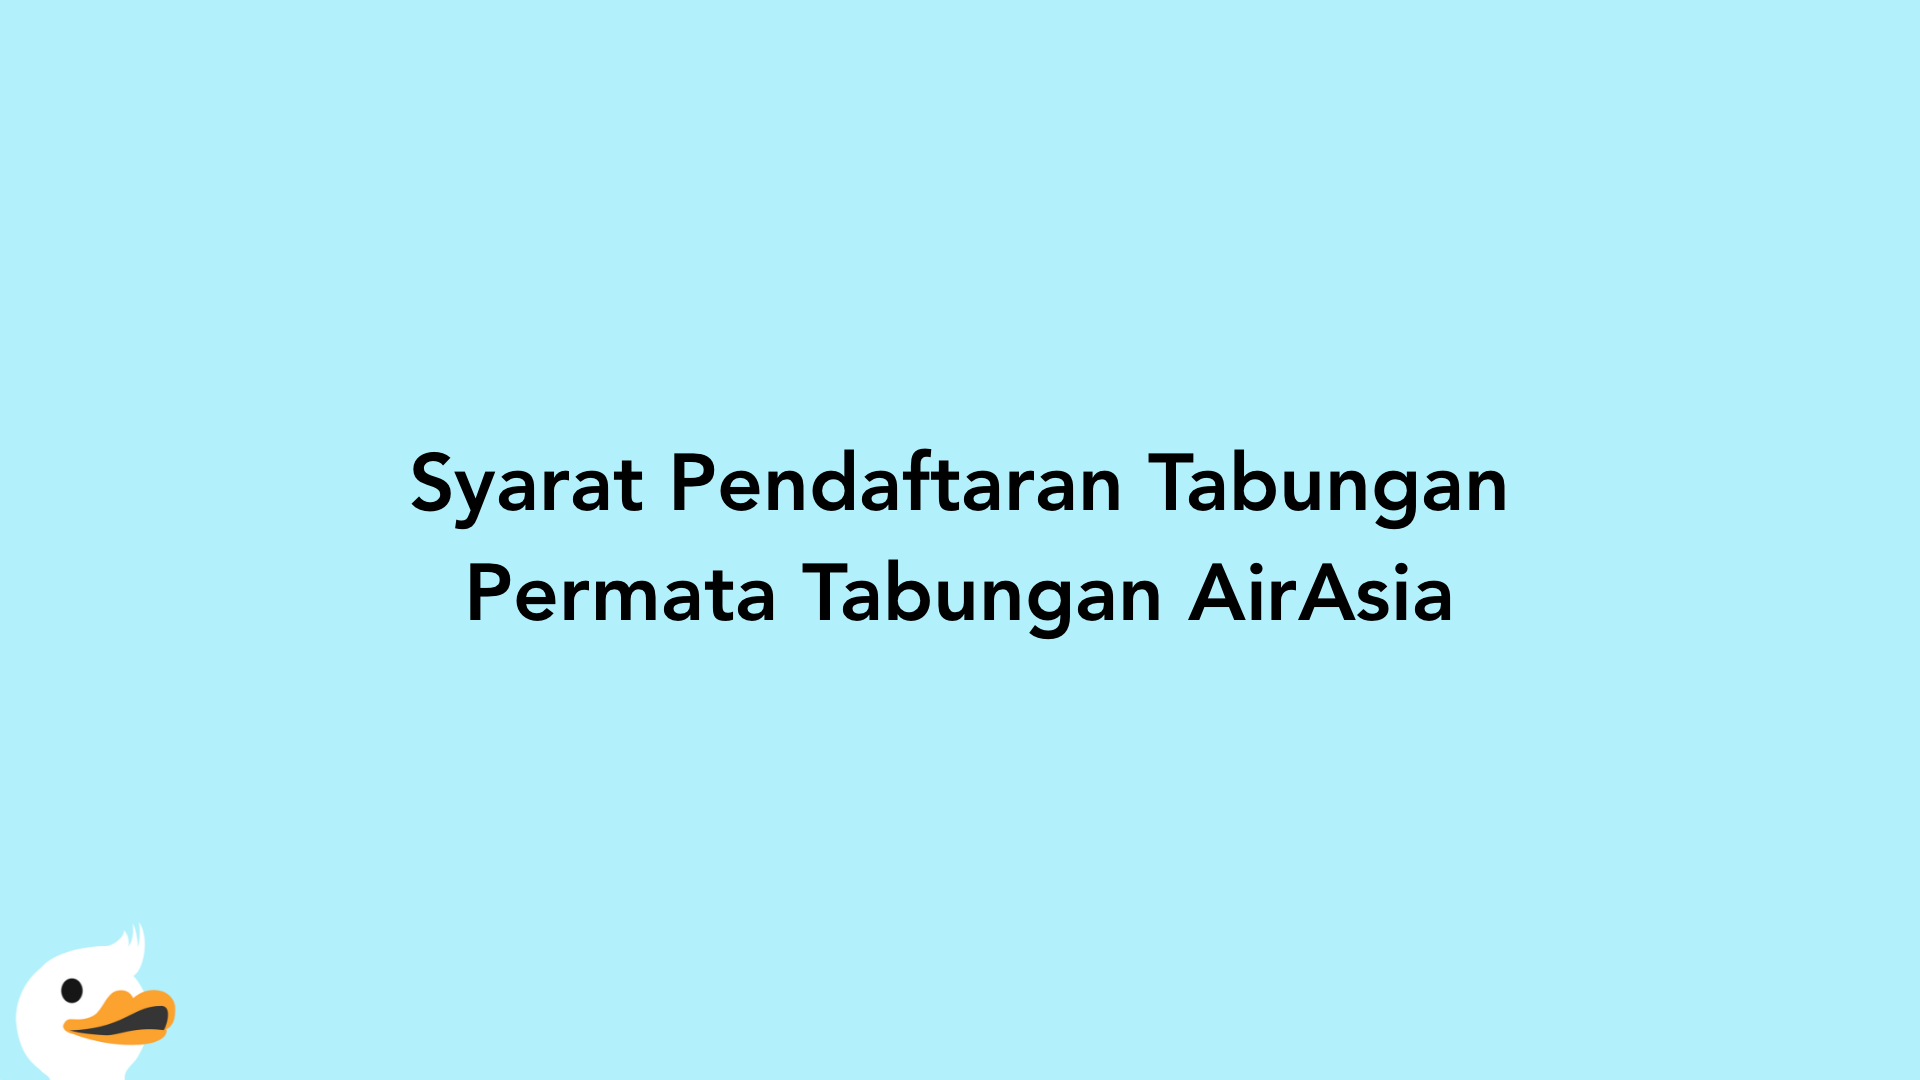 Syarat Pendaftaran Tabungan Permata Tabungan AirAsia